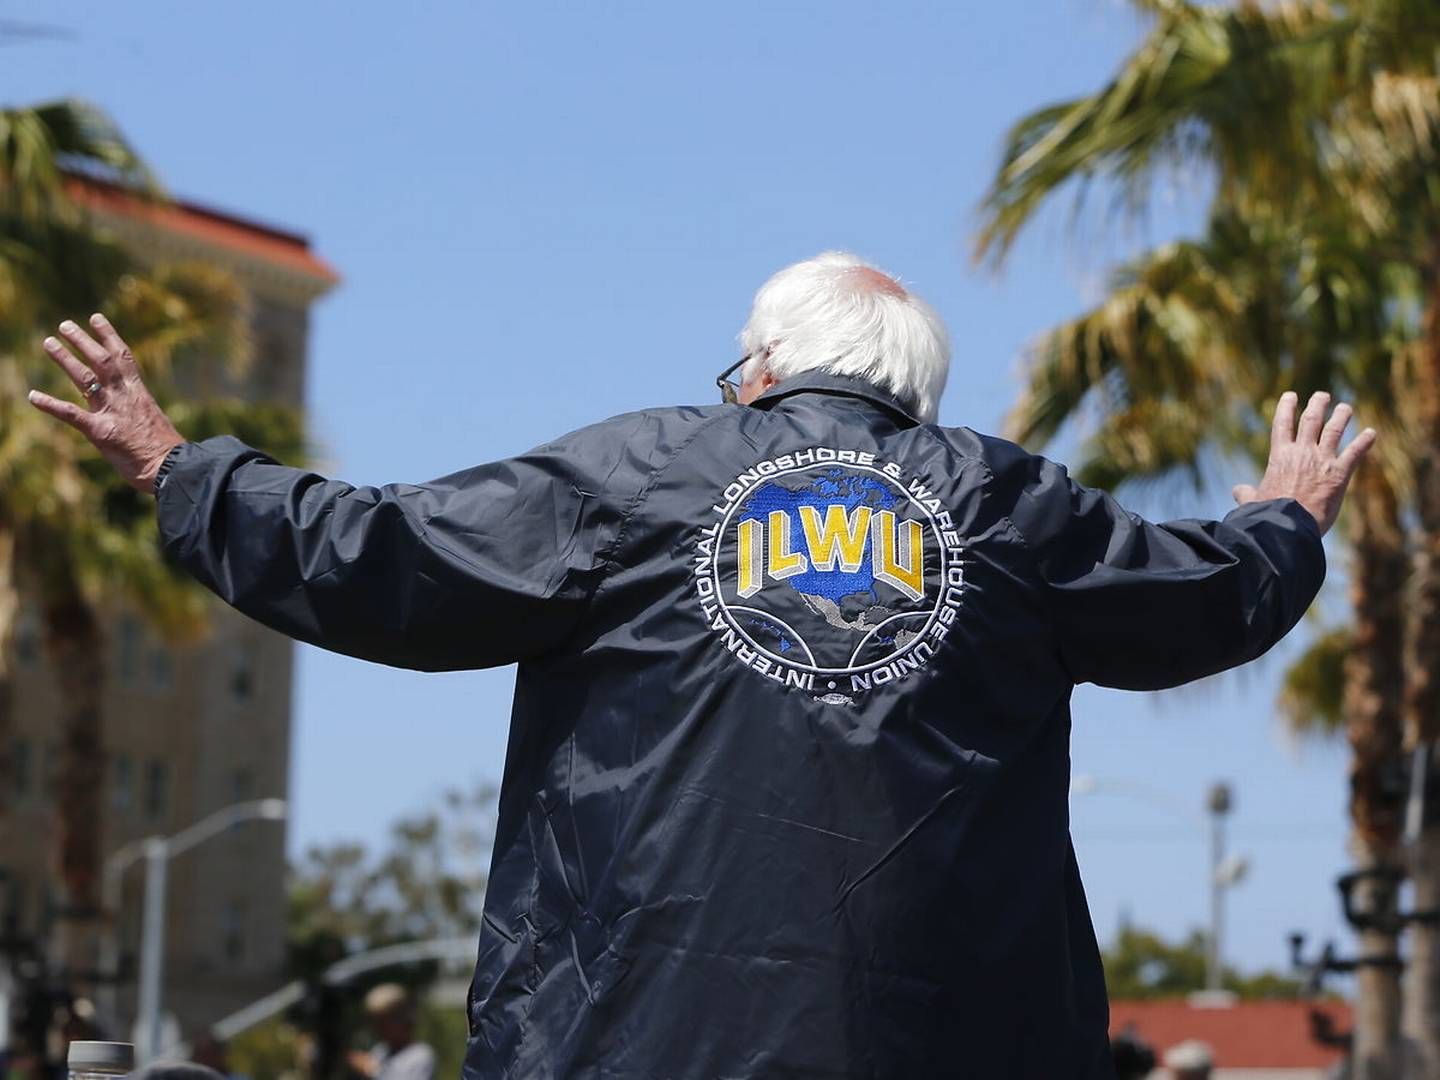 Den tidligere præsidentkandidat Bernie Sanders fik i 2016 sin opbakning fra havnearbejdernes fagforening ILWU i lyset af sin kamp for fagforeninger og arbejderklassen. | Foto: Damian Dovarganes/AP/Ritzau Scanpix